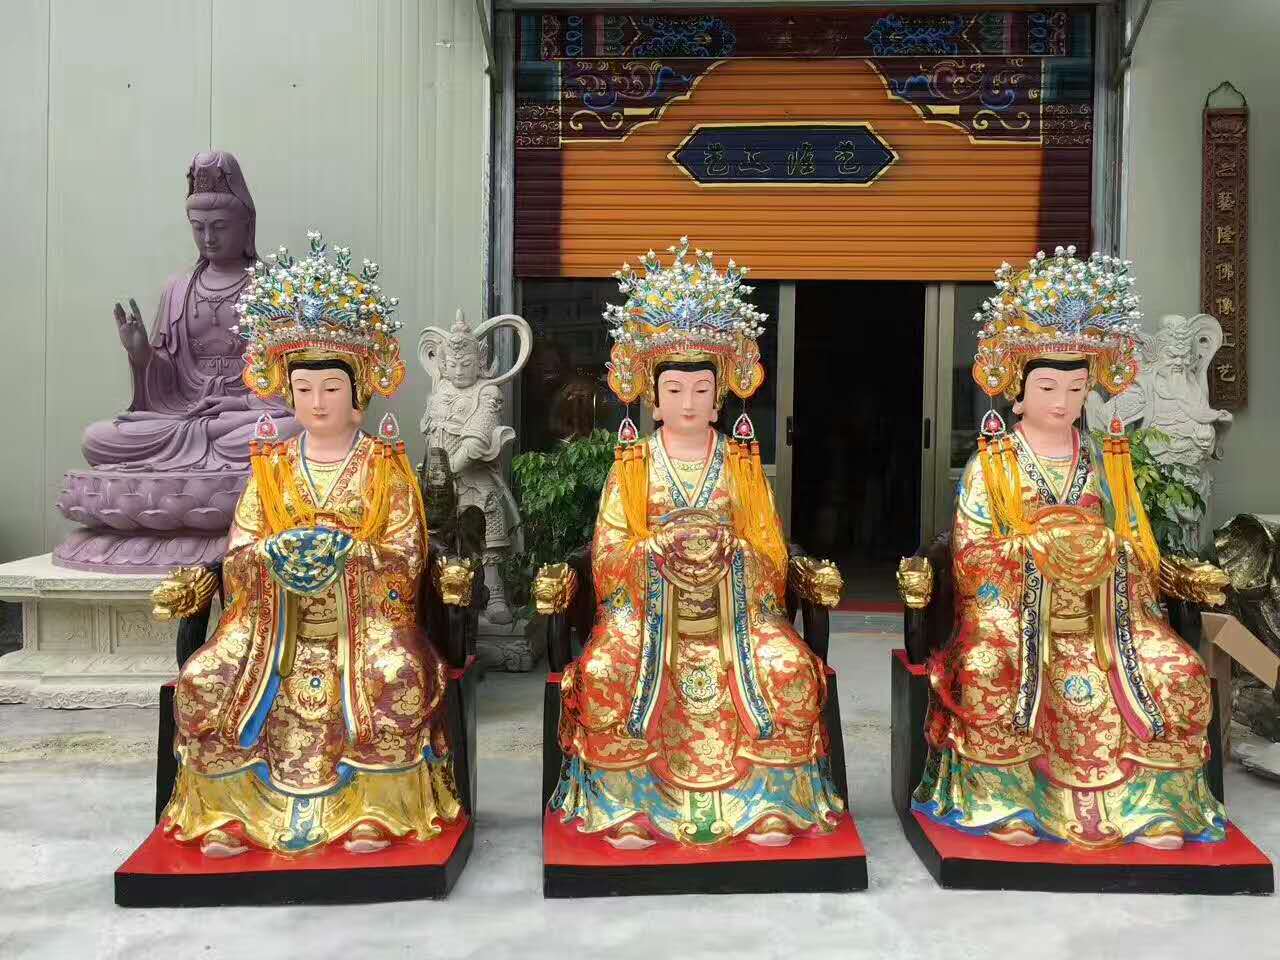 产品展示 神像 神像 产品名称:神像 抚州市东乡区顺缘佛器铸造厂是